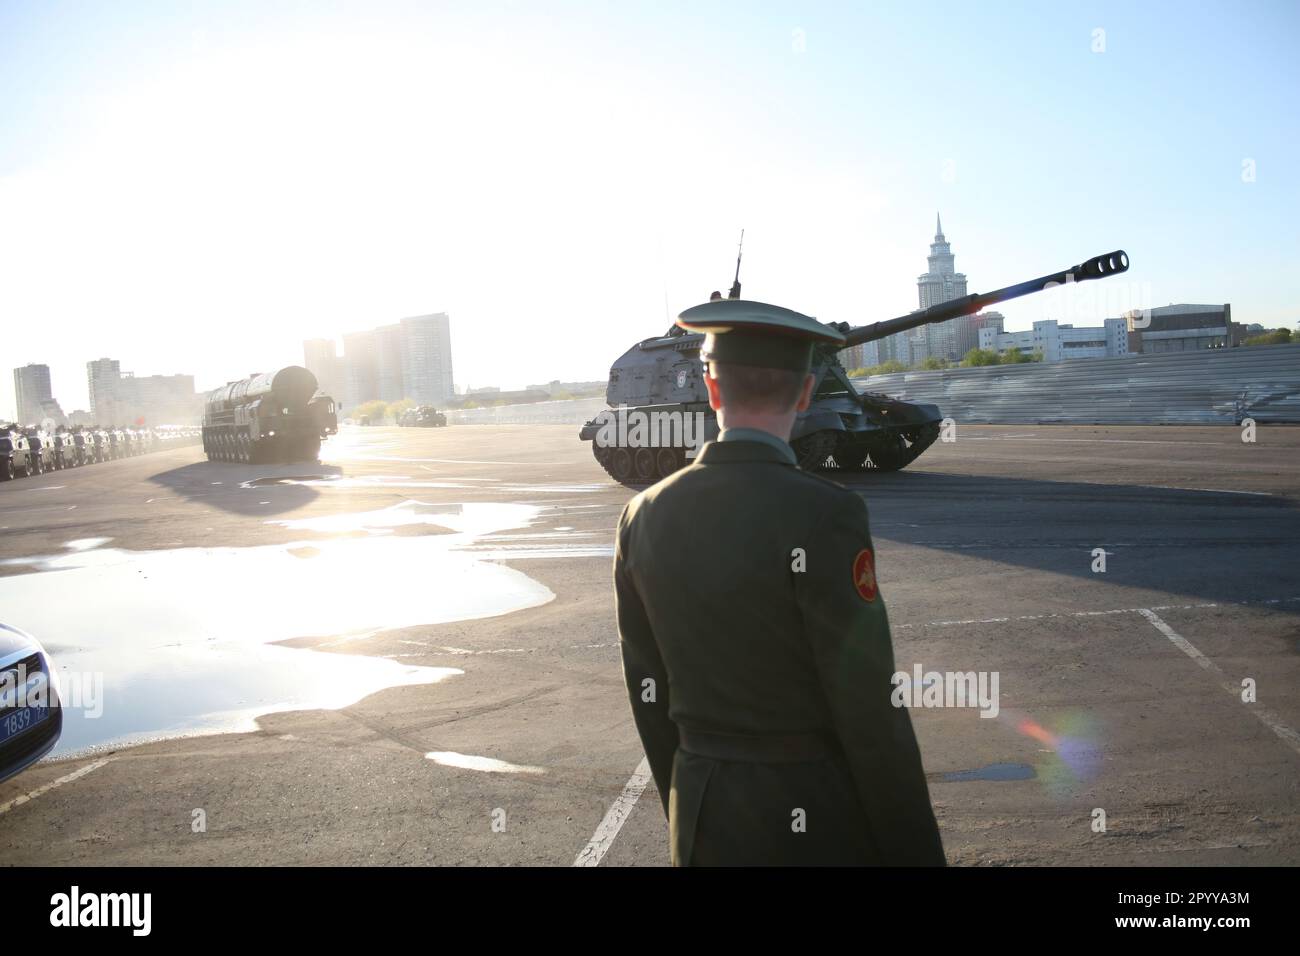 Prove della parata del giorno della Vittoria a Mosca. Carri armati militari russi Foto Stock